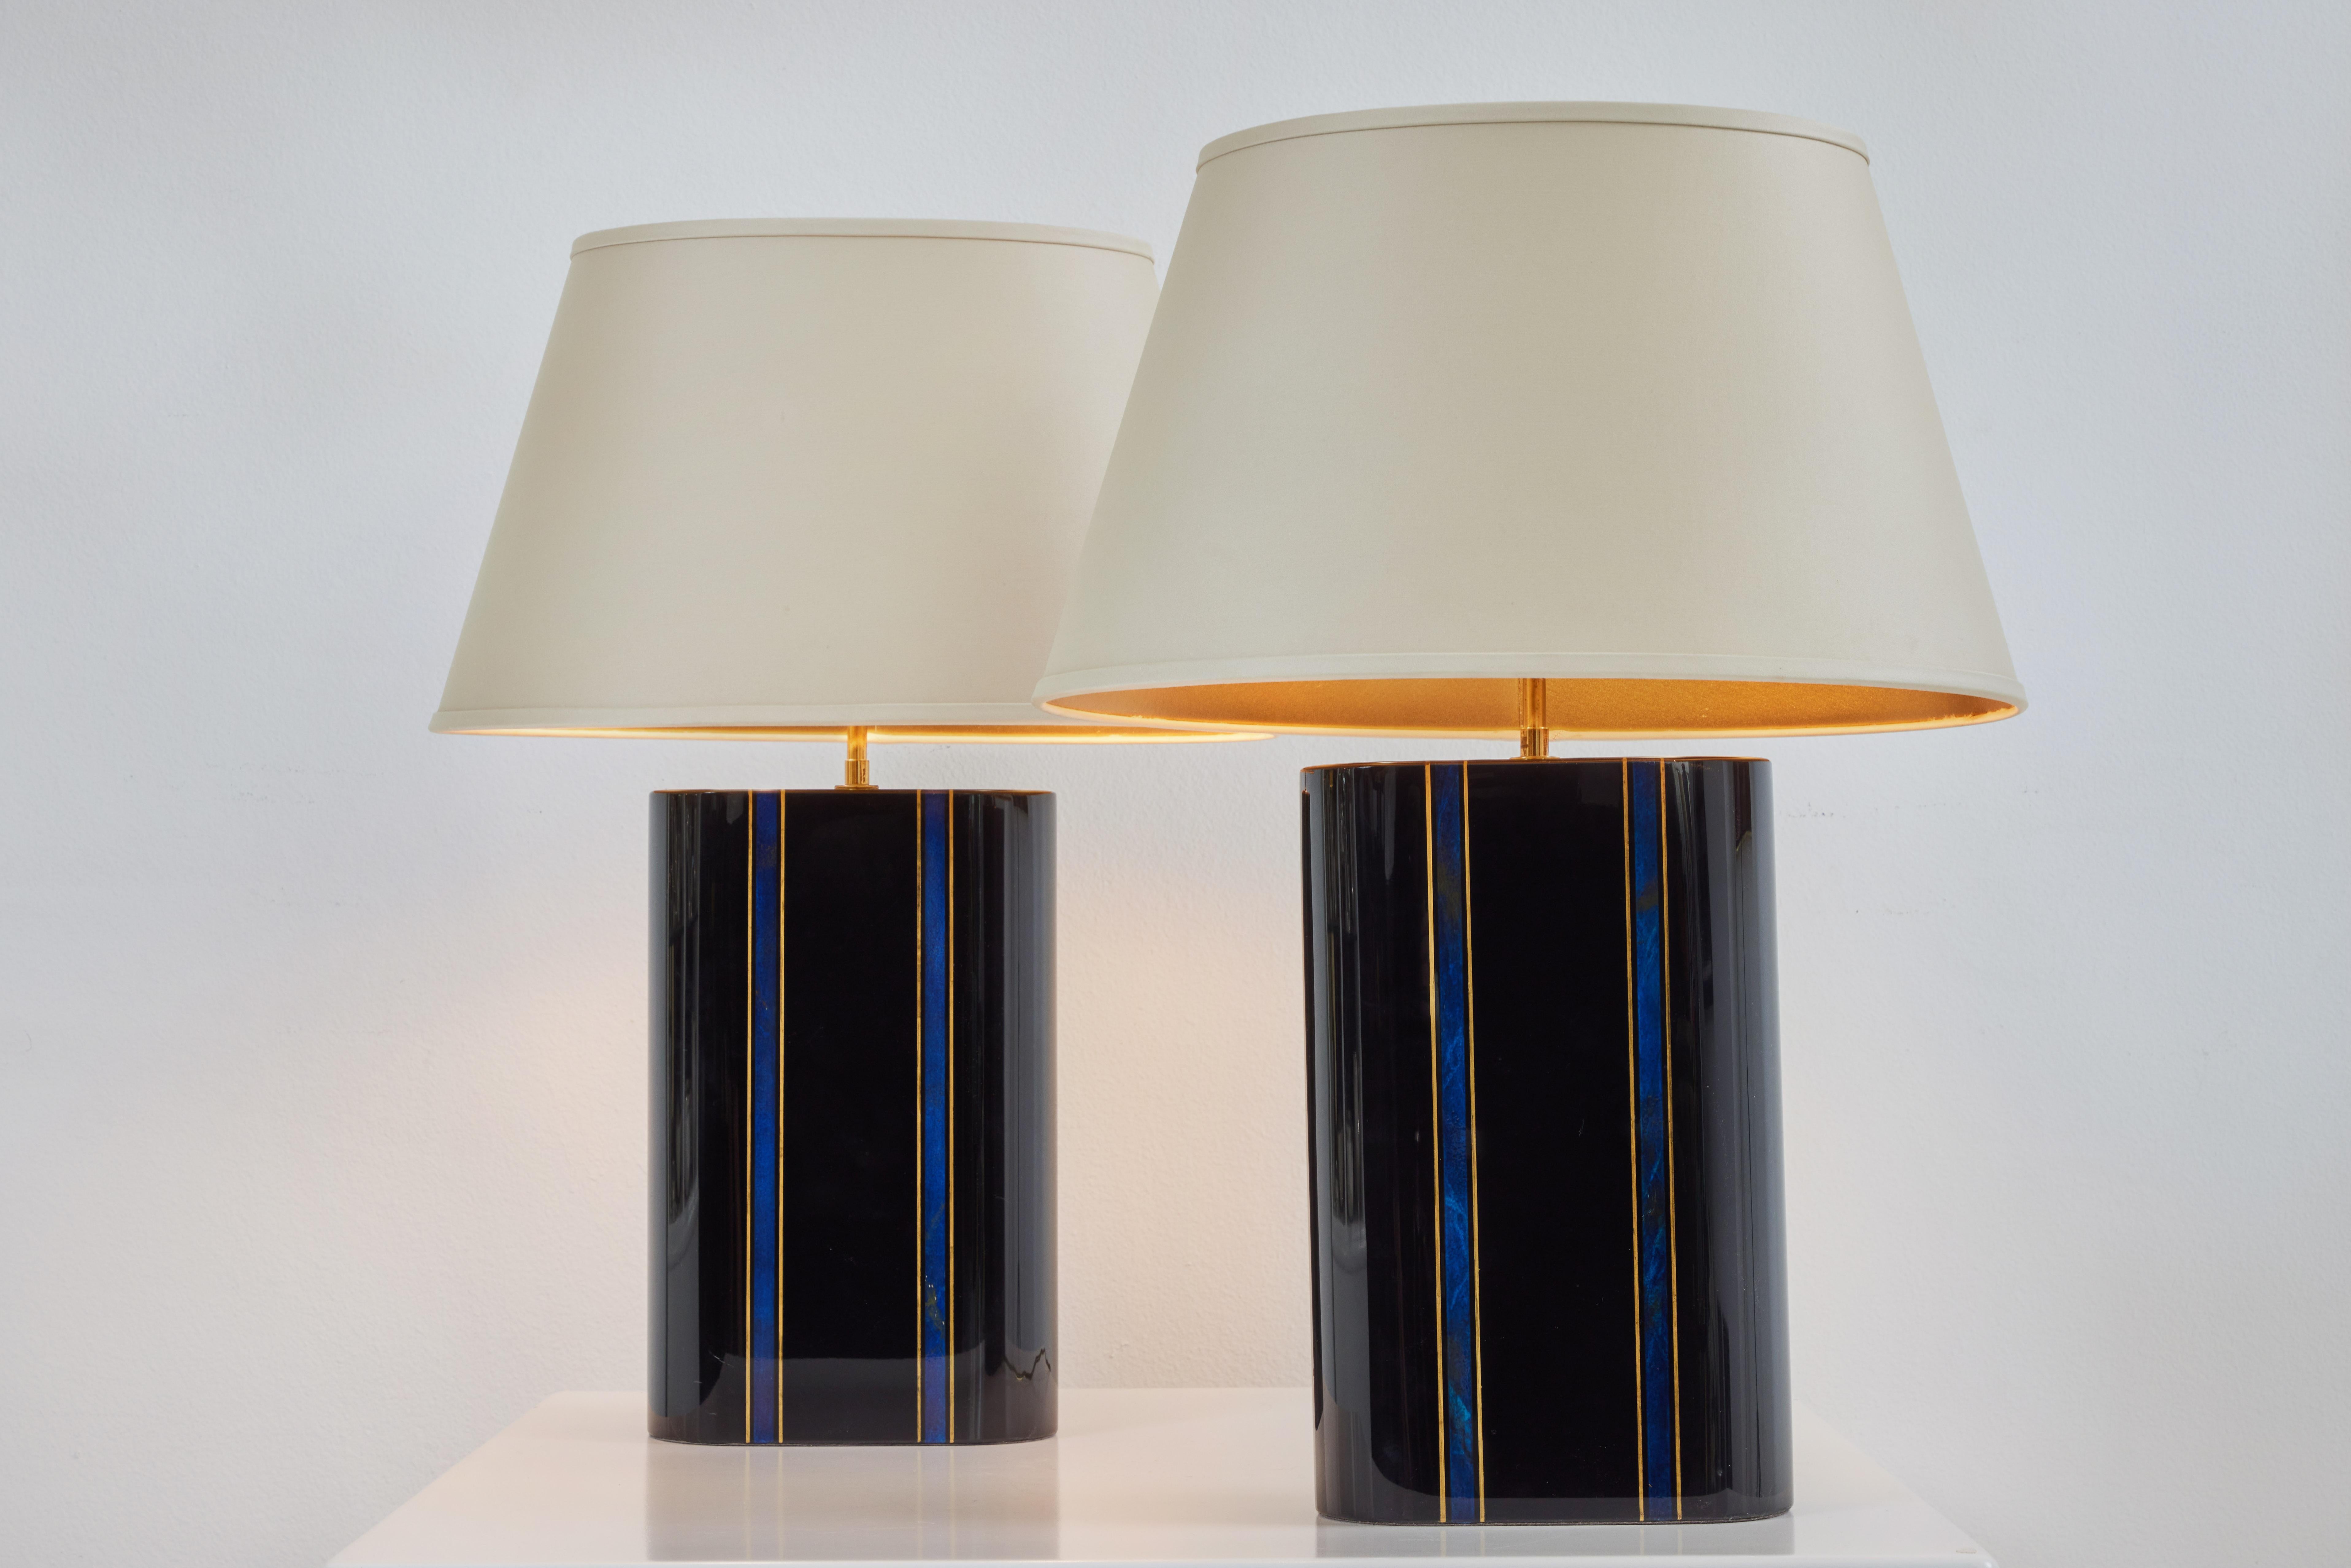 Ein wunderschönes Lampenpaar im klassischen Karl-Springer-Design. Die Lackkörper sind in sehr gutem Zustand und die Faux-Details aus Lapis und Gold sind ein wunderbares Detail. Die Lampenschirme sind original und in sehr gutem Zustand. Sie sind aus